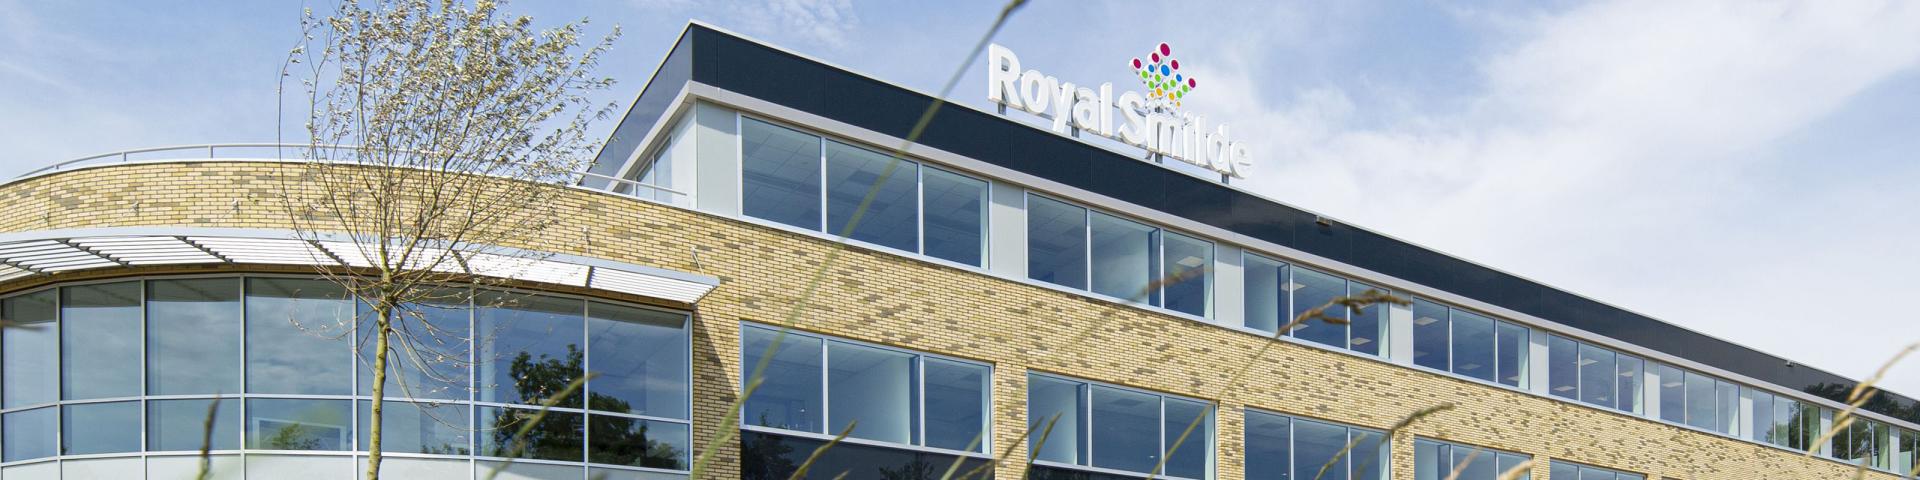 Voedingsmiddelenbedrijf Royal Smilde betrapt hackers op heterdaad